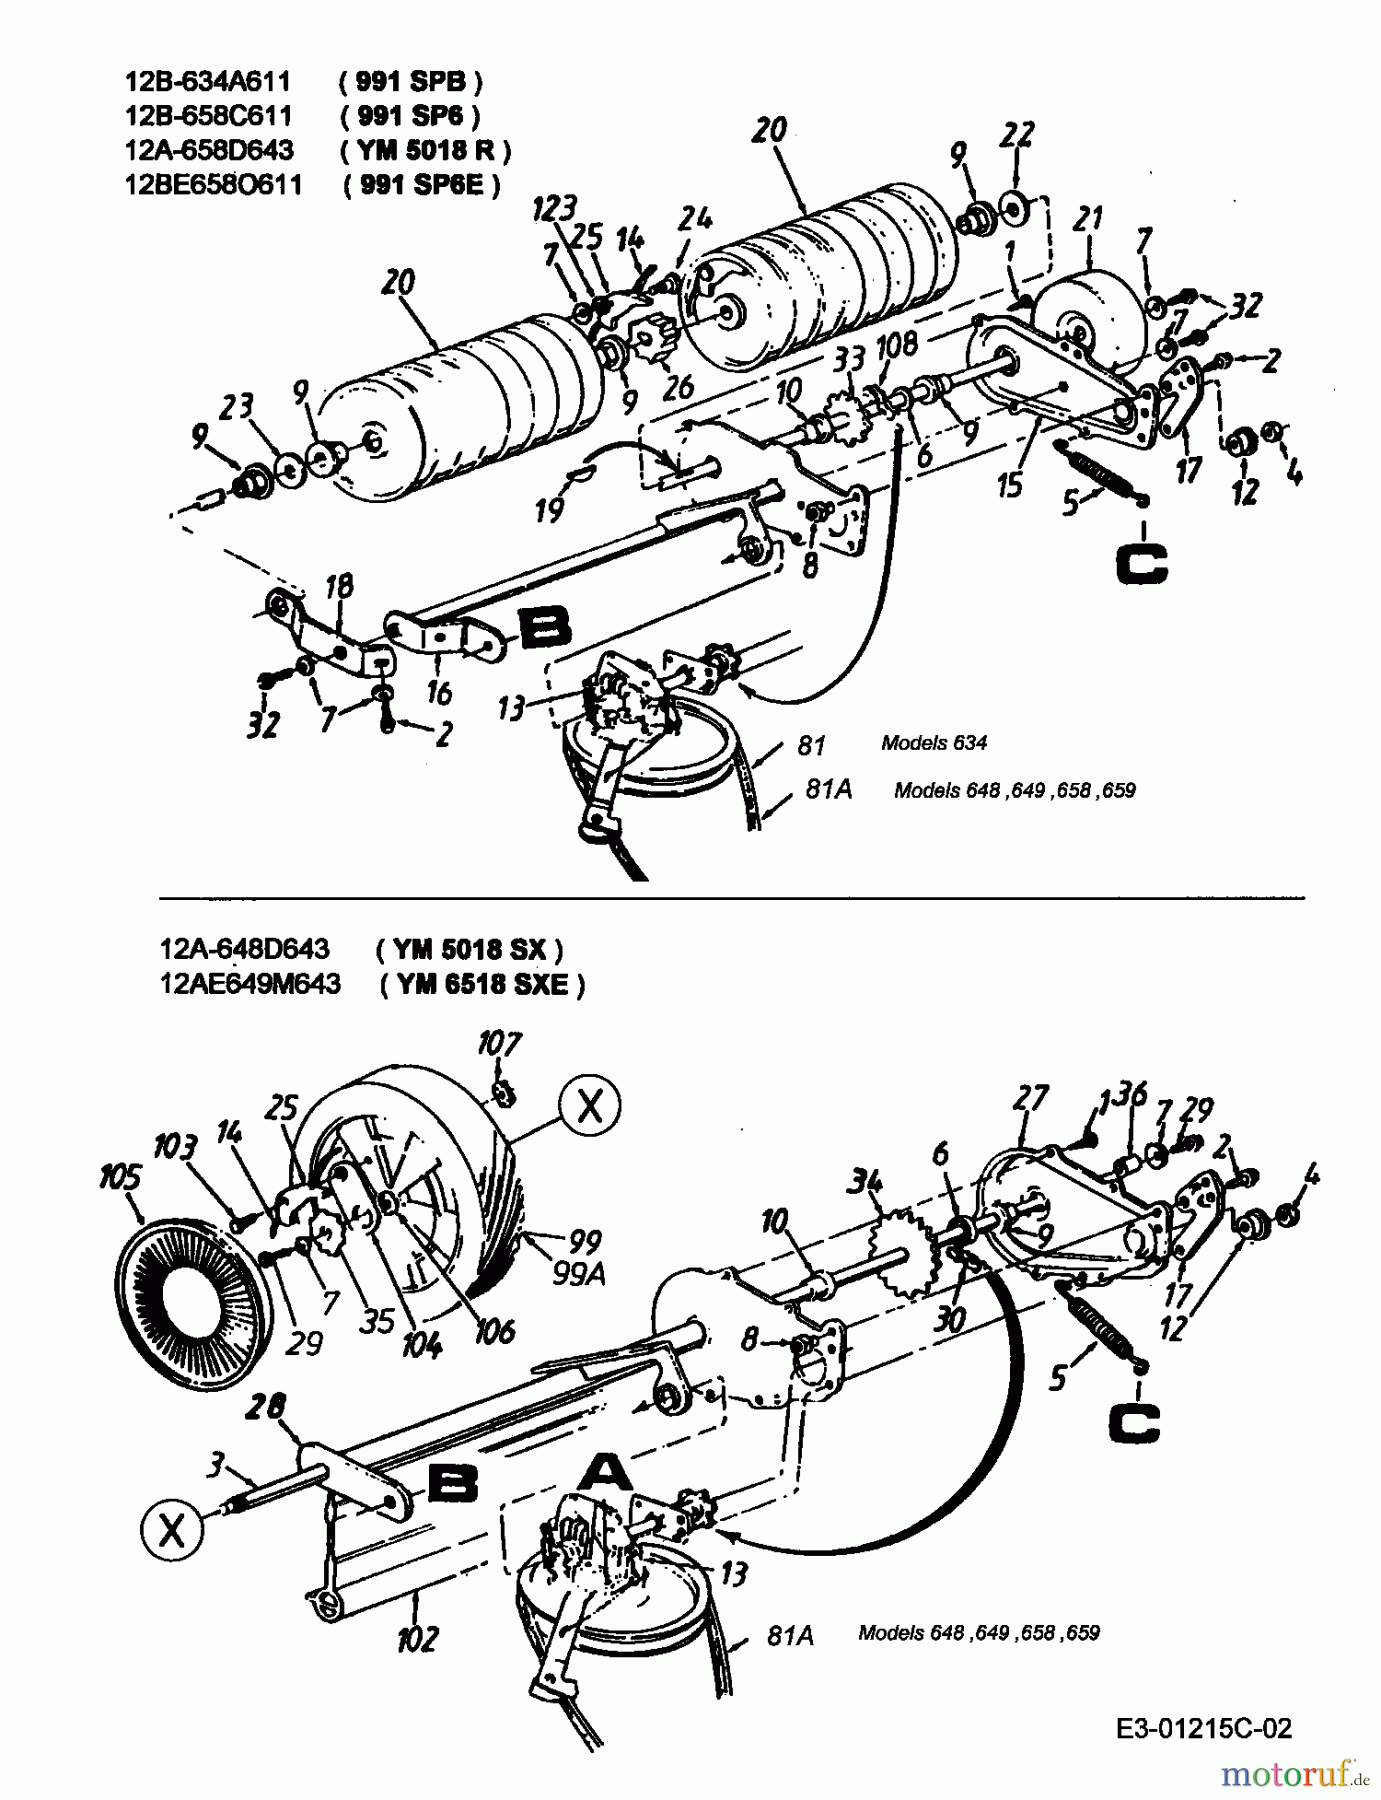  Lawnflite Motormäher mit Antrieb 991 SPB 12B-634A611  (2000) Getriebe, Rollen, Räder